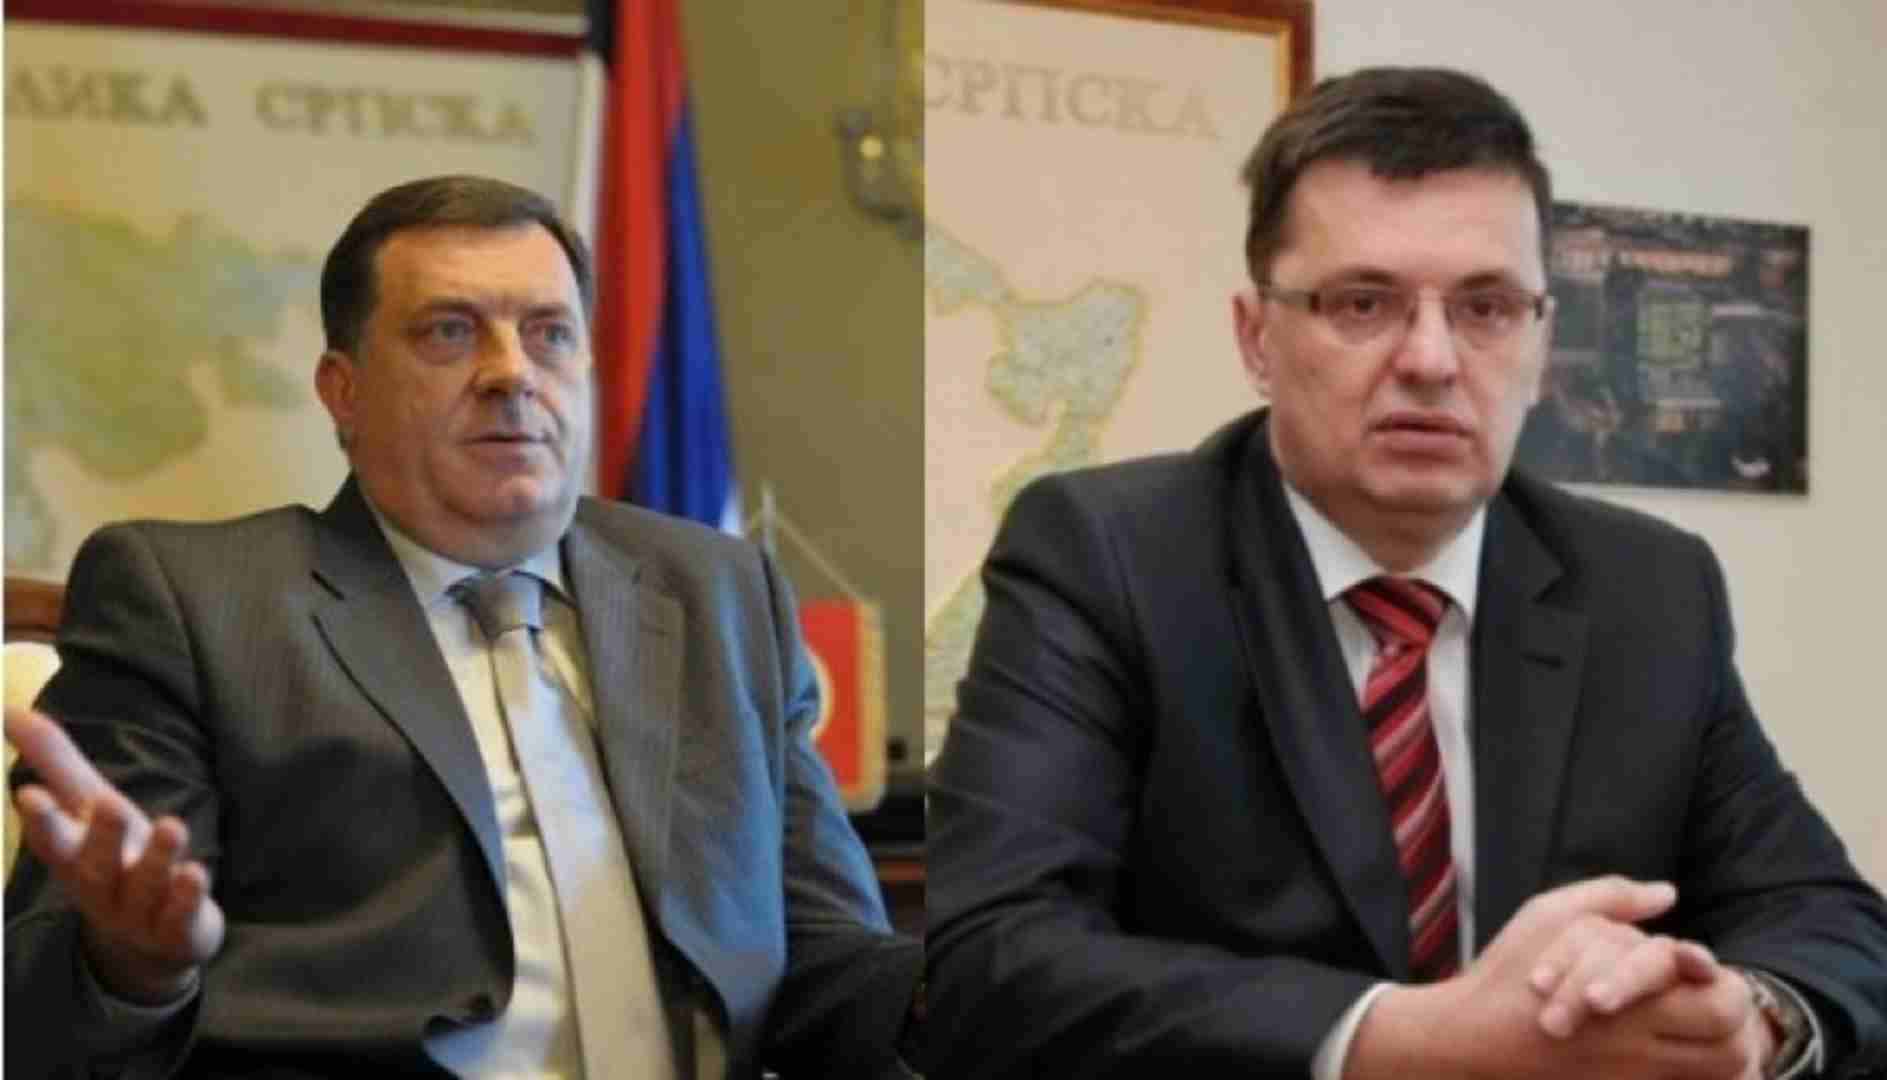 SUKOB TEGELTIJE I DODIKA: Dodik želi napustiti “političko Sarajevo”, a Tegeltija zateže jer se ne želi vratiti u “političku Banju Luku”